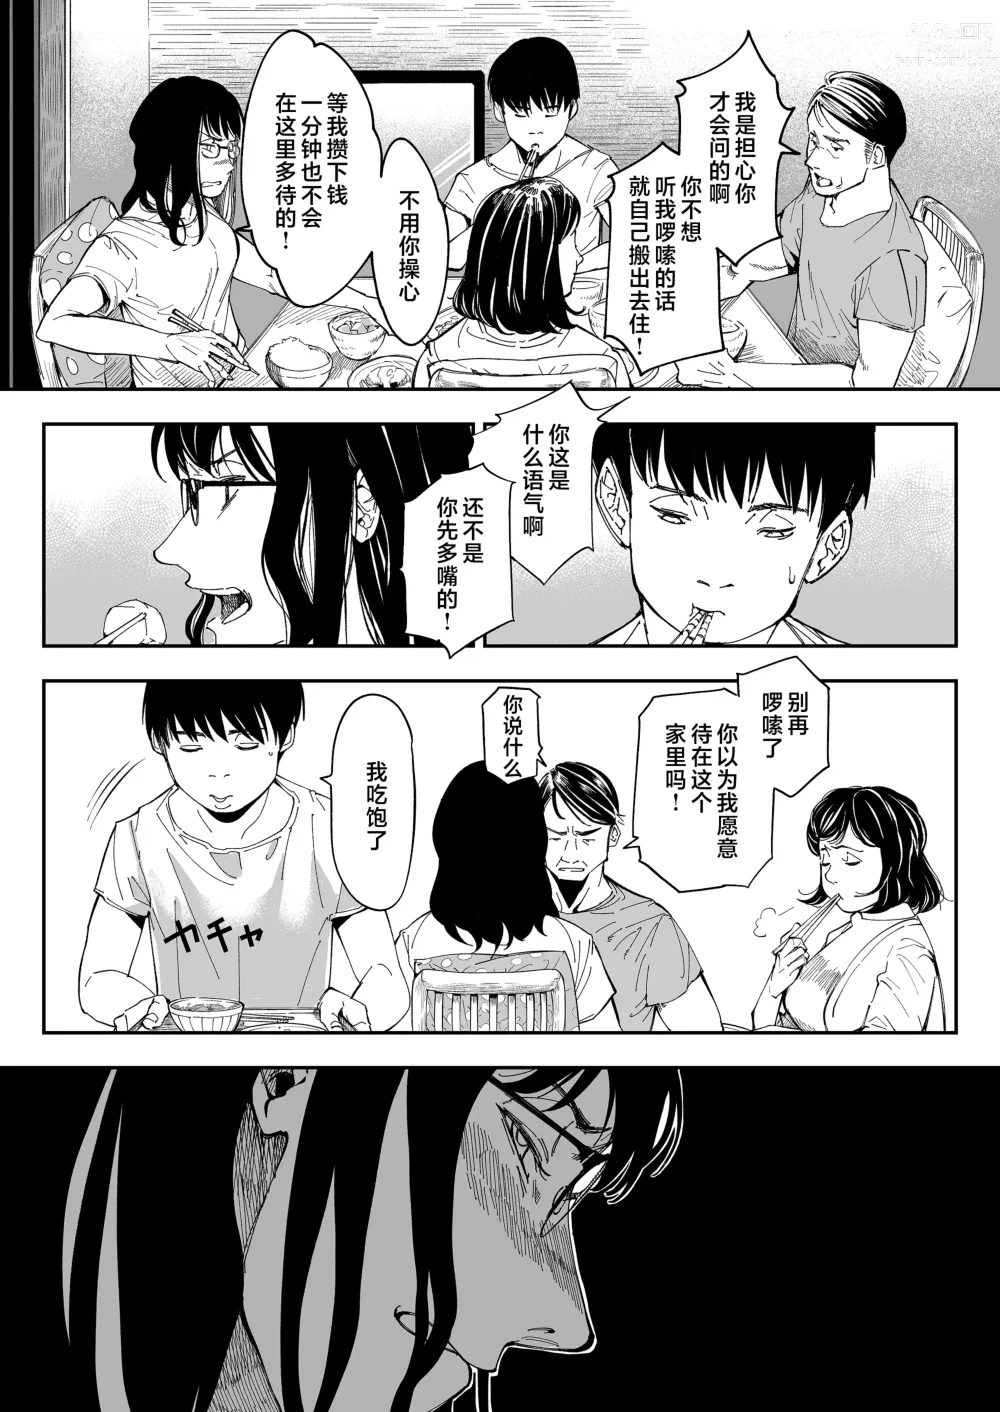 Page 5 of doujinshi 找到了姐姐的福利小号